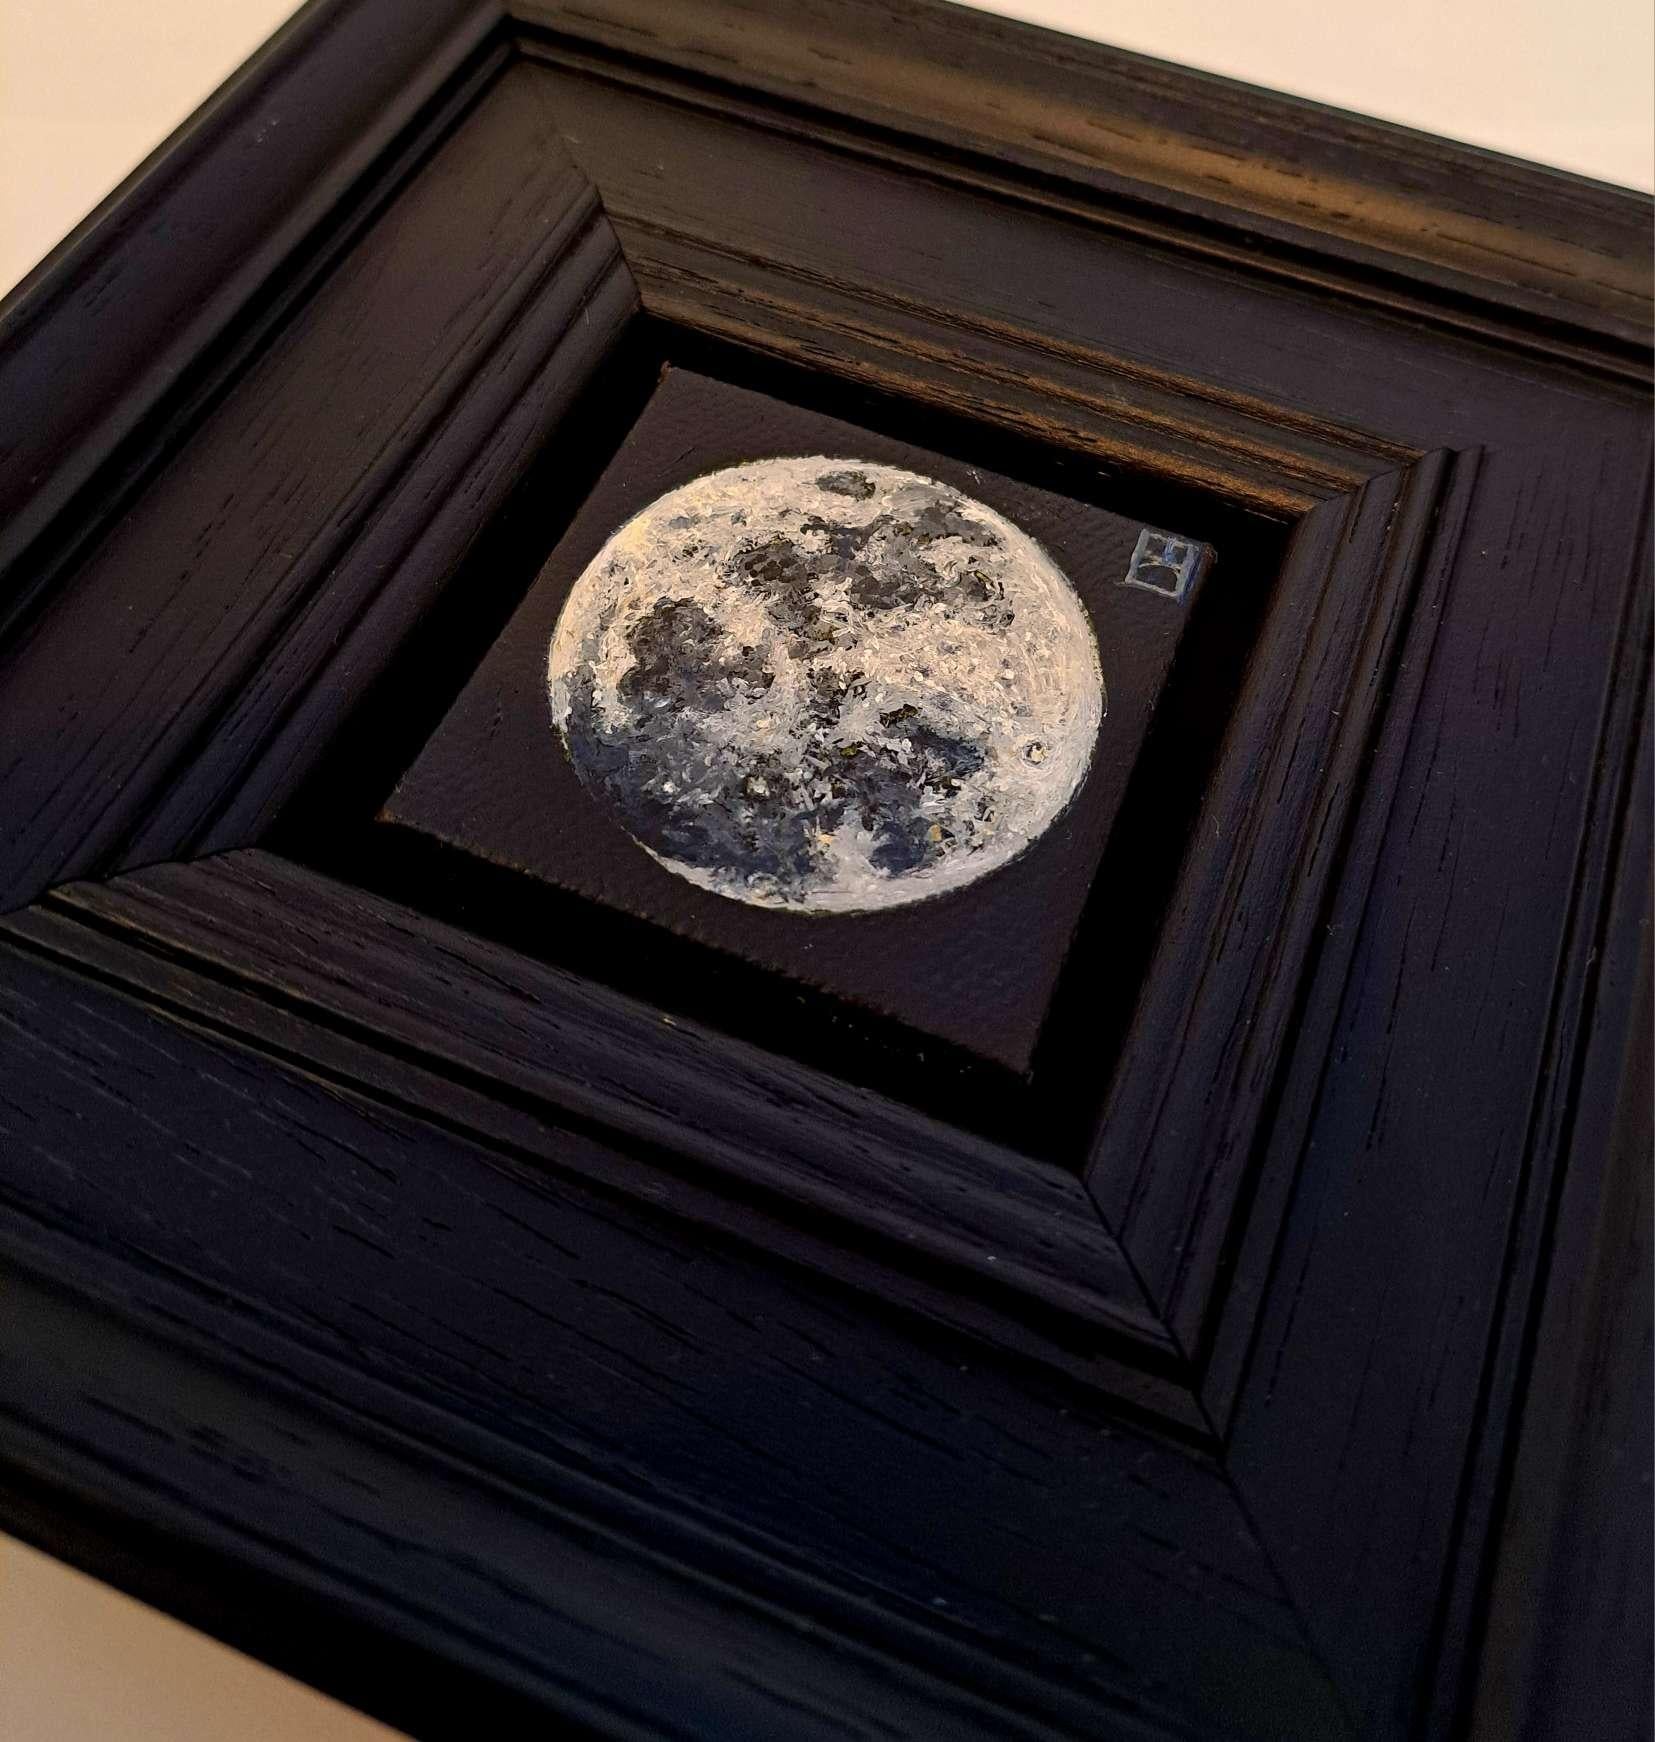 Pocket Full Moon est une peinture à l'huile originale réalisée par Dani Humberstone dans le cadre de sa série Pocket Painting, qui propose des peintures à l'huile réalistes à petite échelle, avec un clin d'œil aux natures mortes baroques. Les